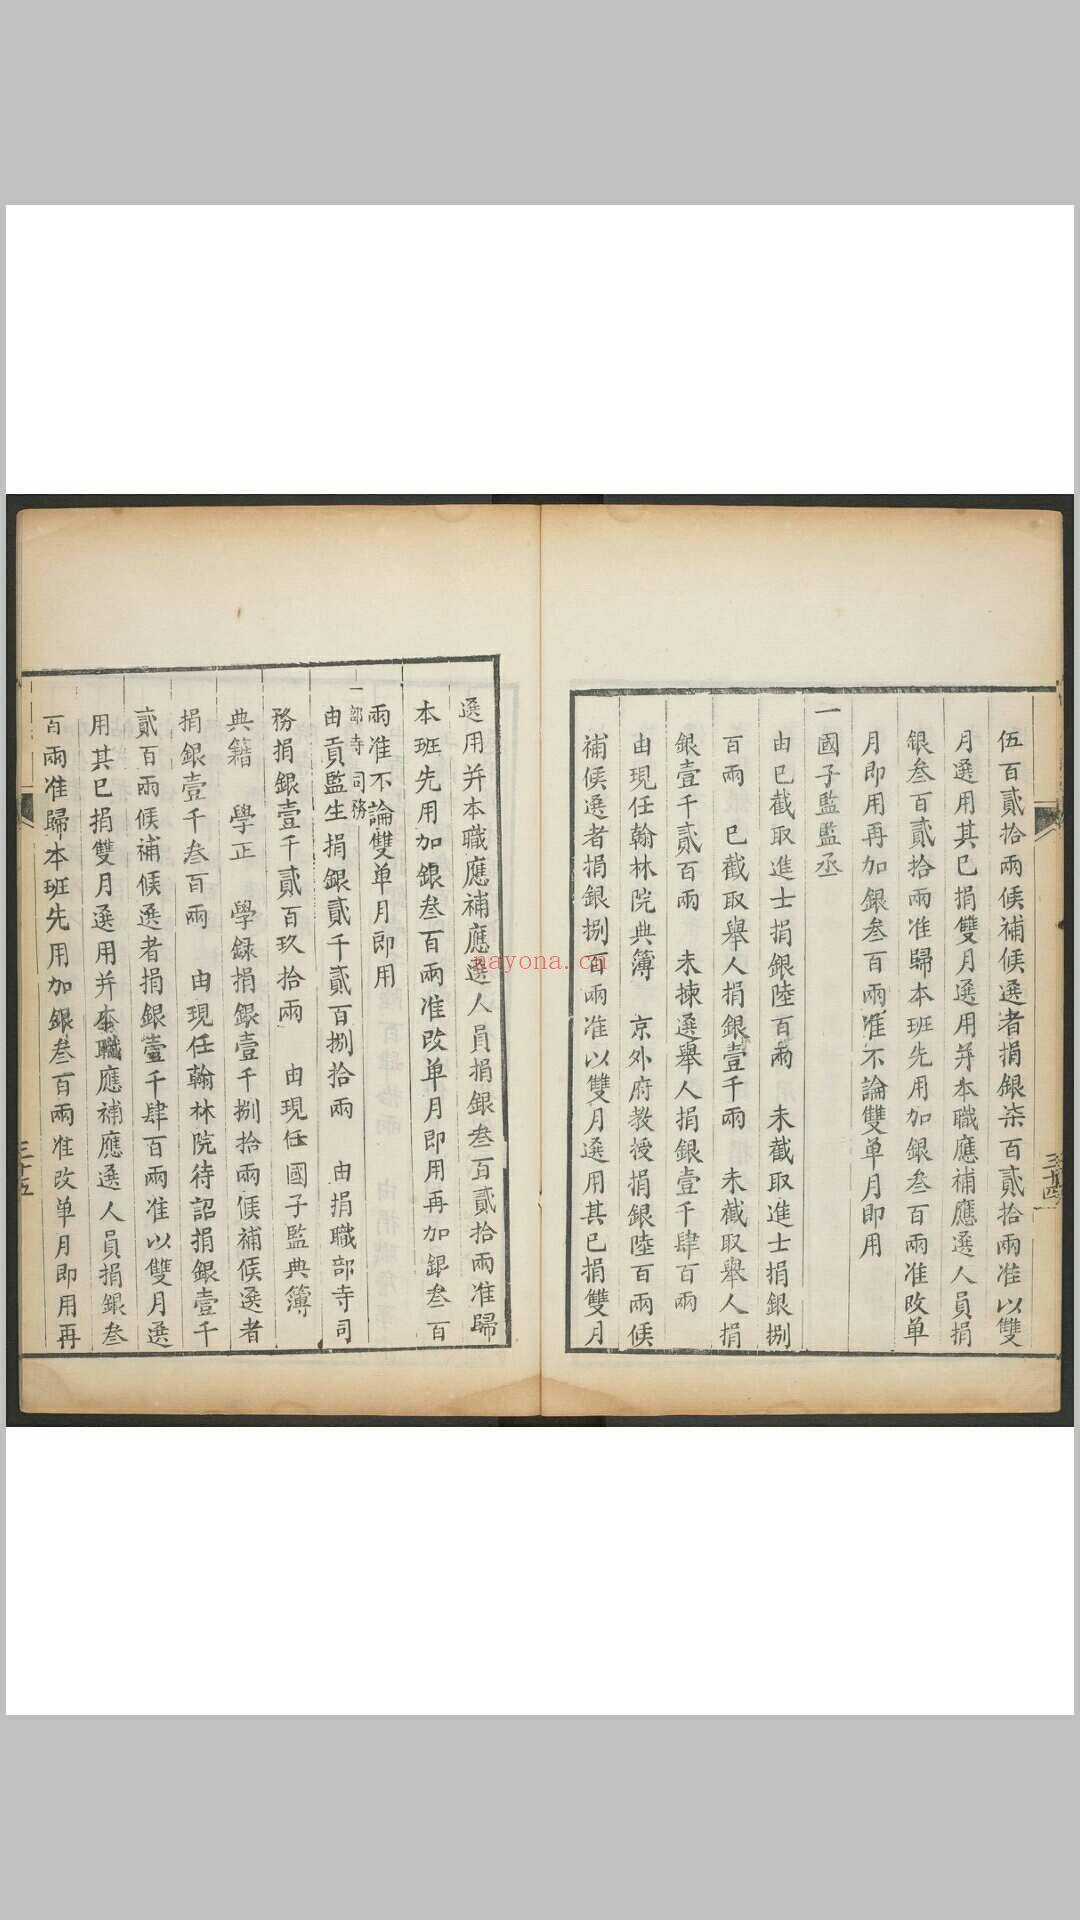 1644-1912 奏准工赈事例. 清嘉庆6年